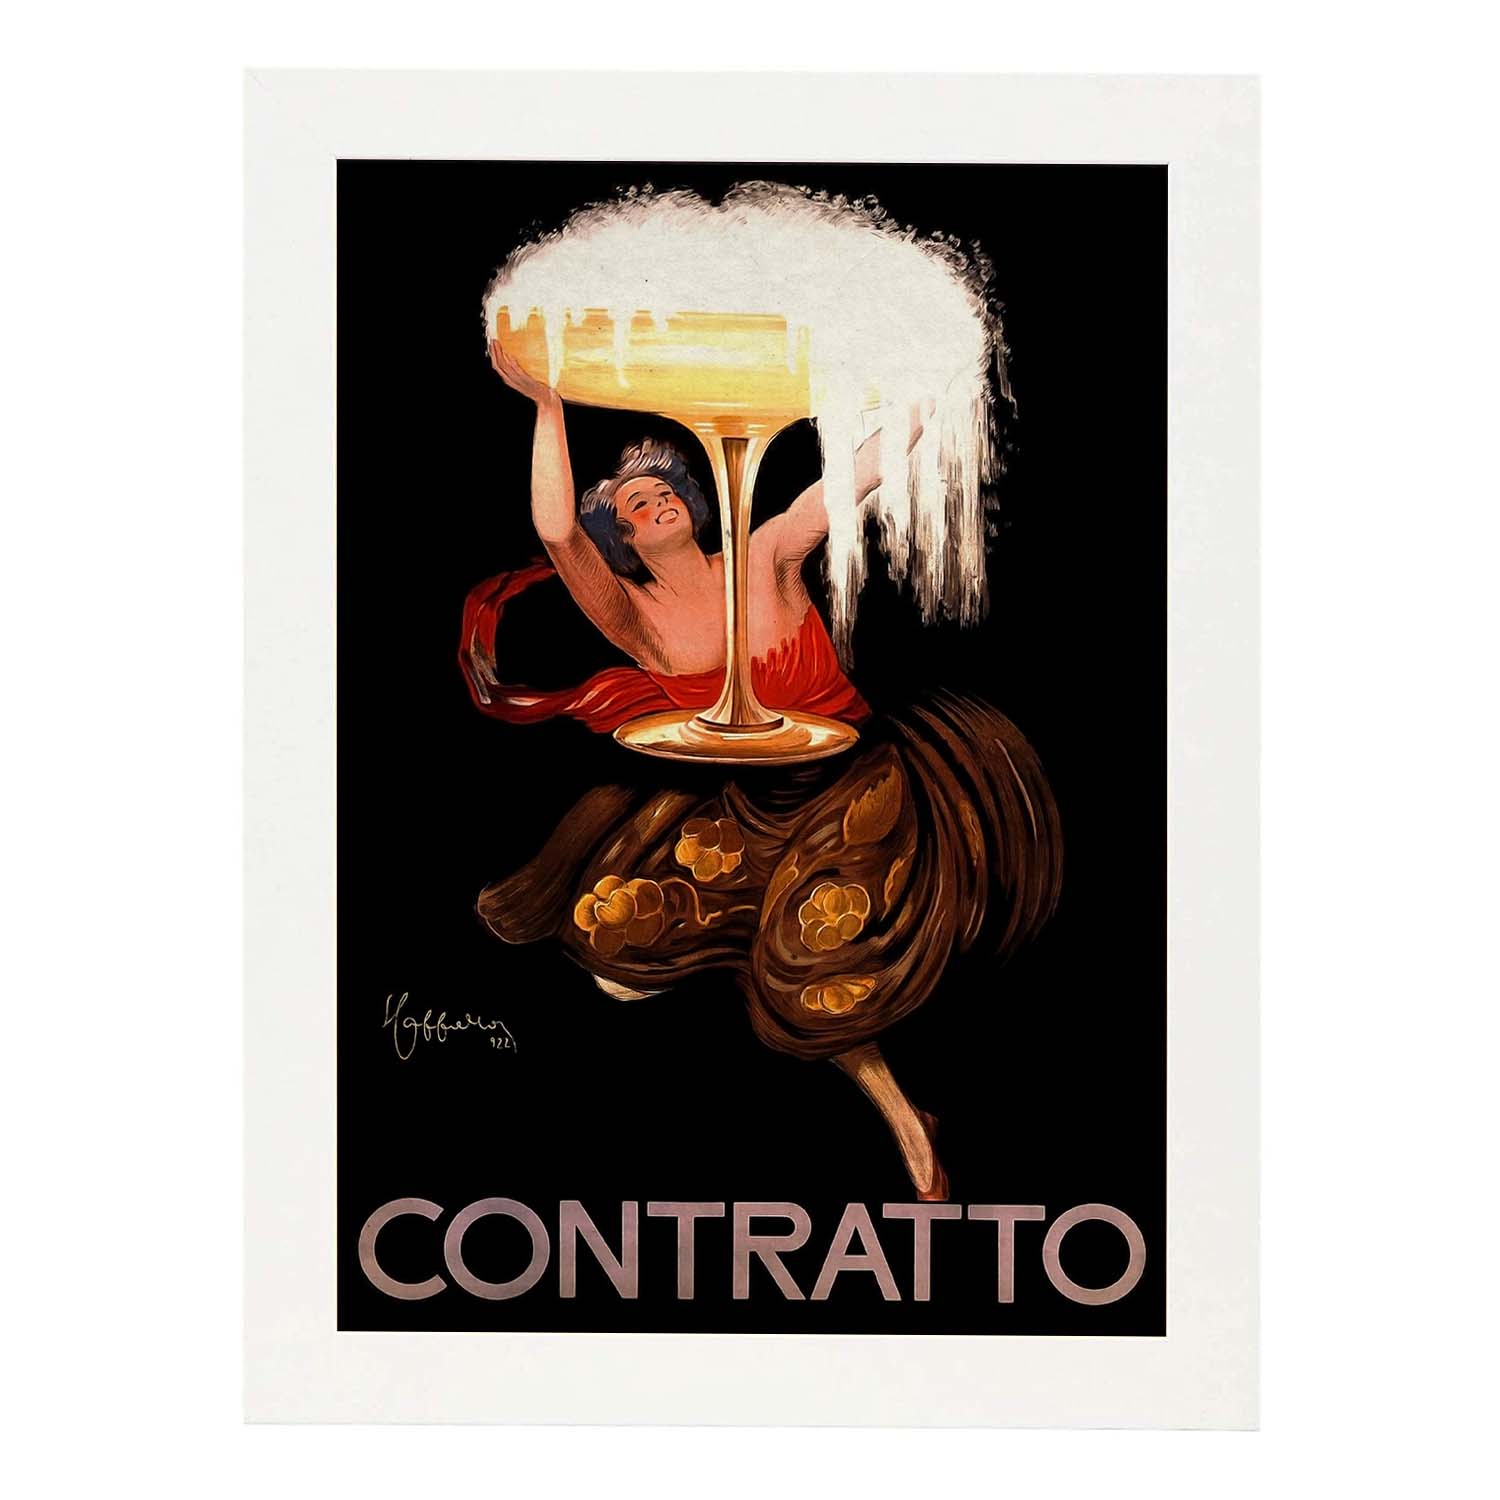 Poster vintage de Contratto. con imágenes vintage y de publicidad antigua.-Artwork-Nacnic-A4-Marco Blanco-Nacnic Estudio SL